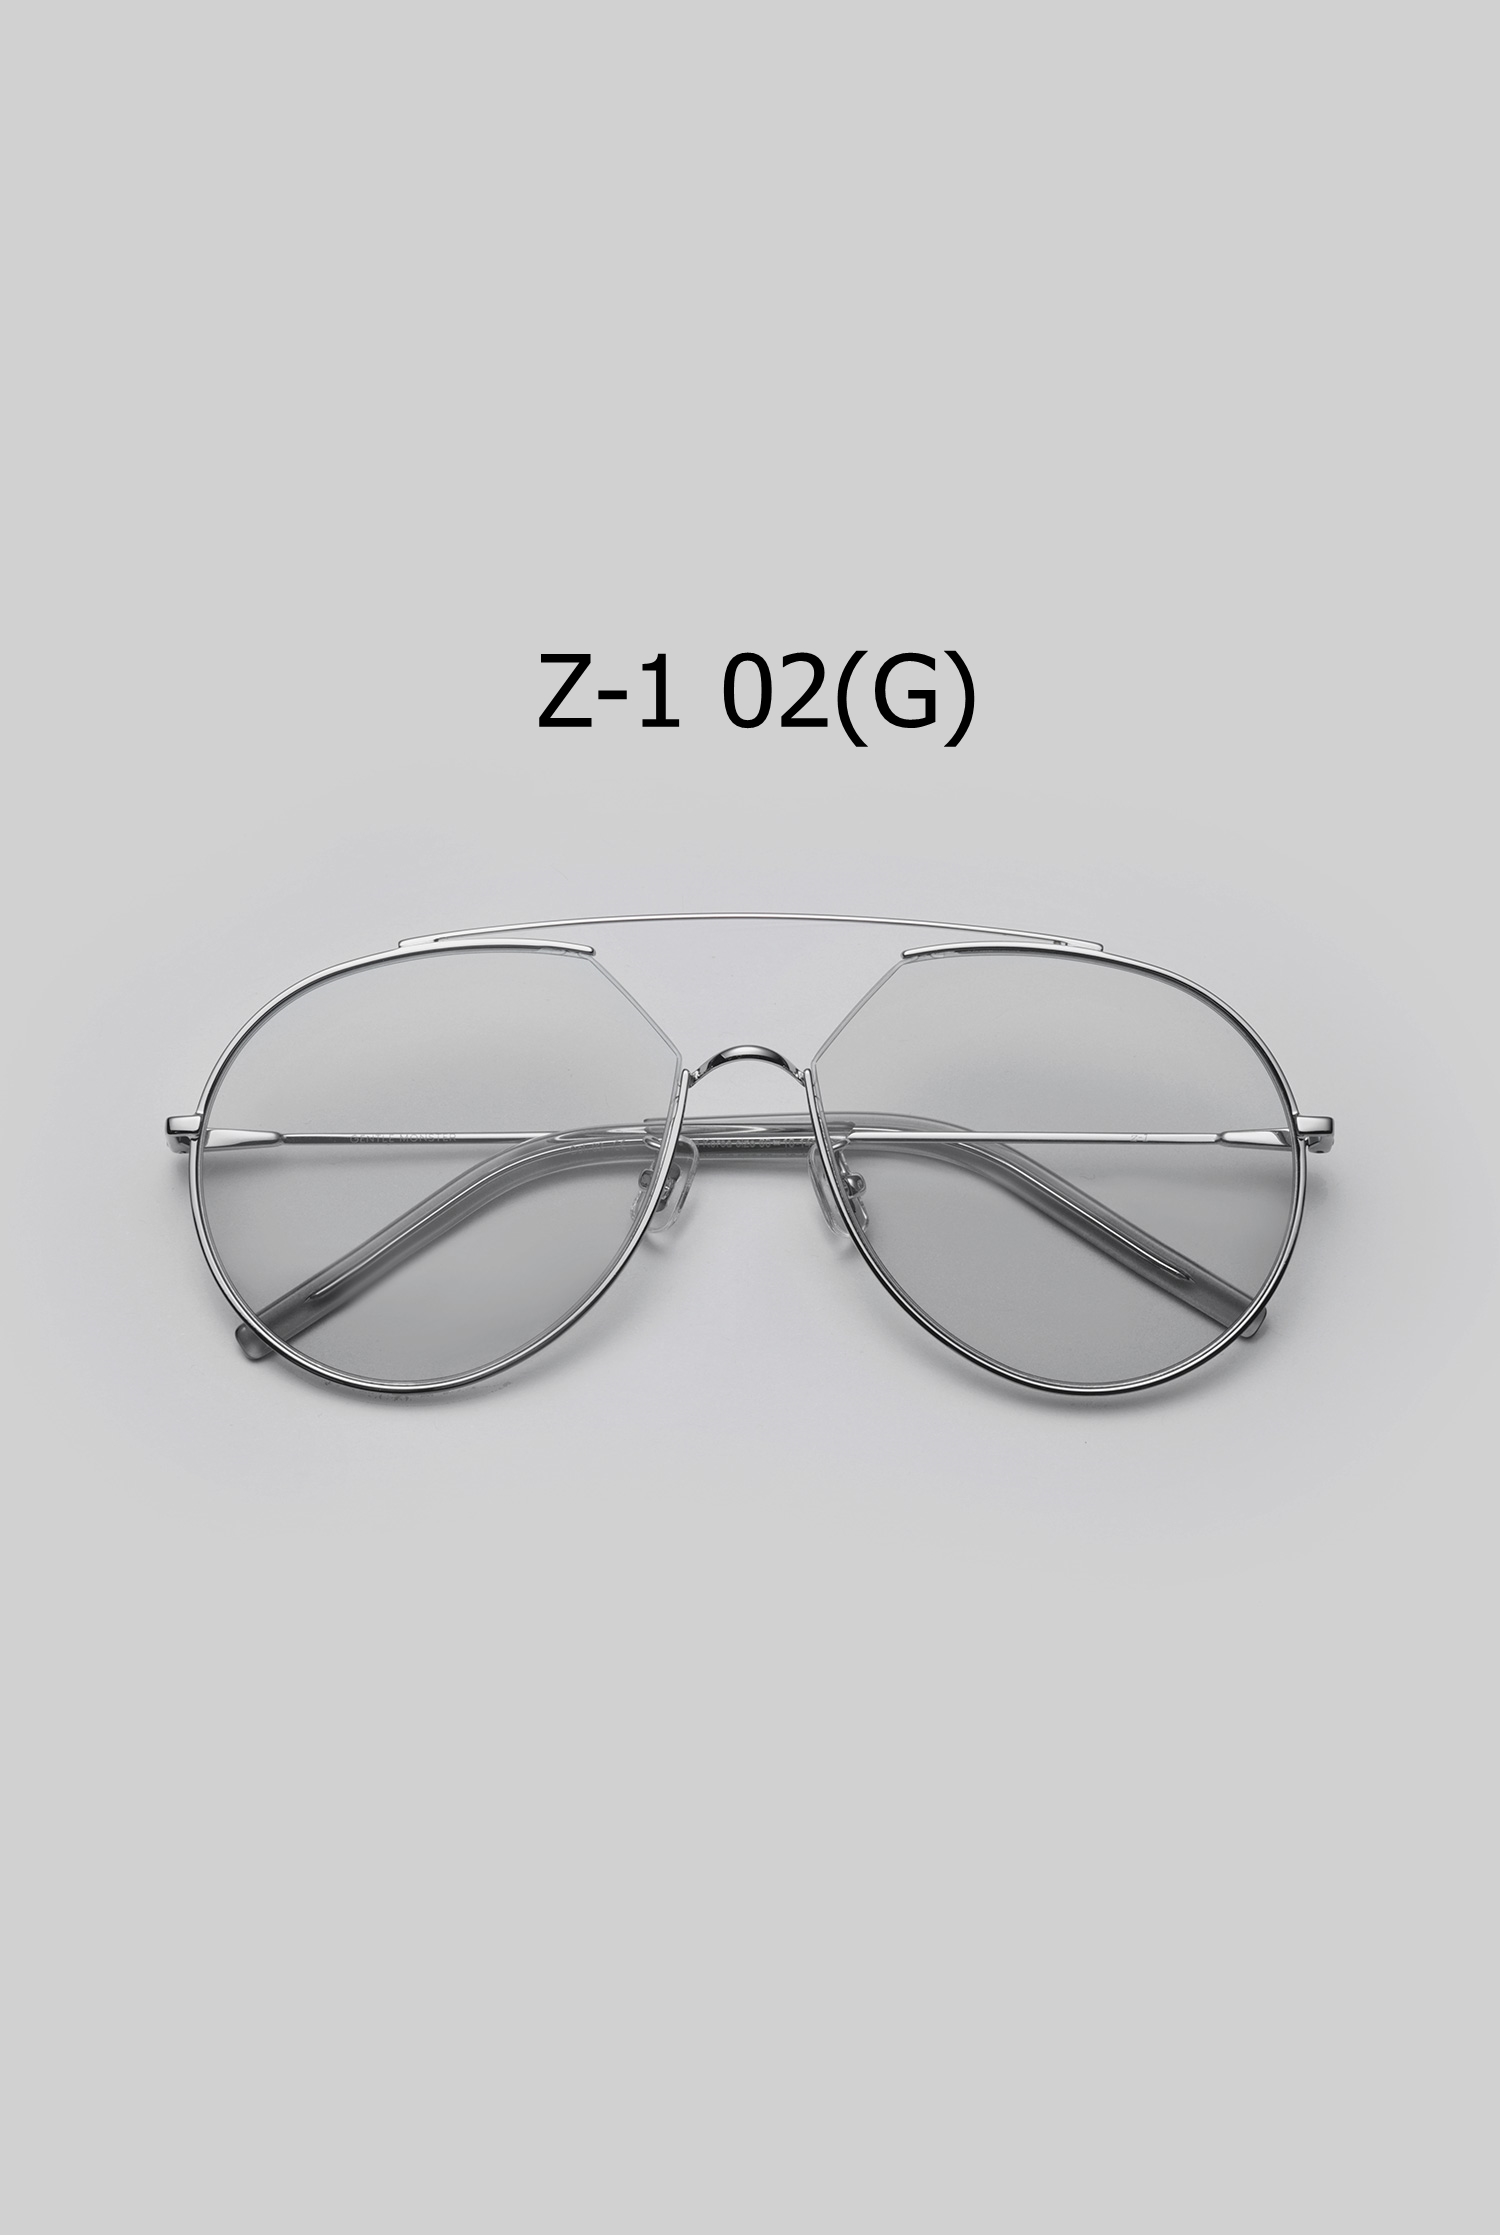 Z-1 02(G) 